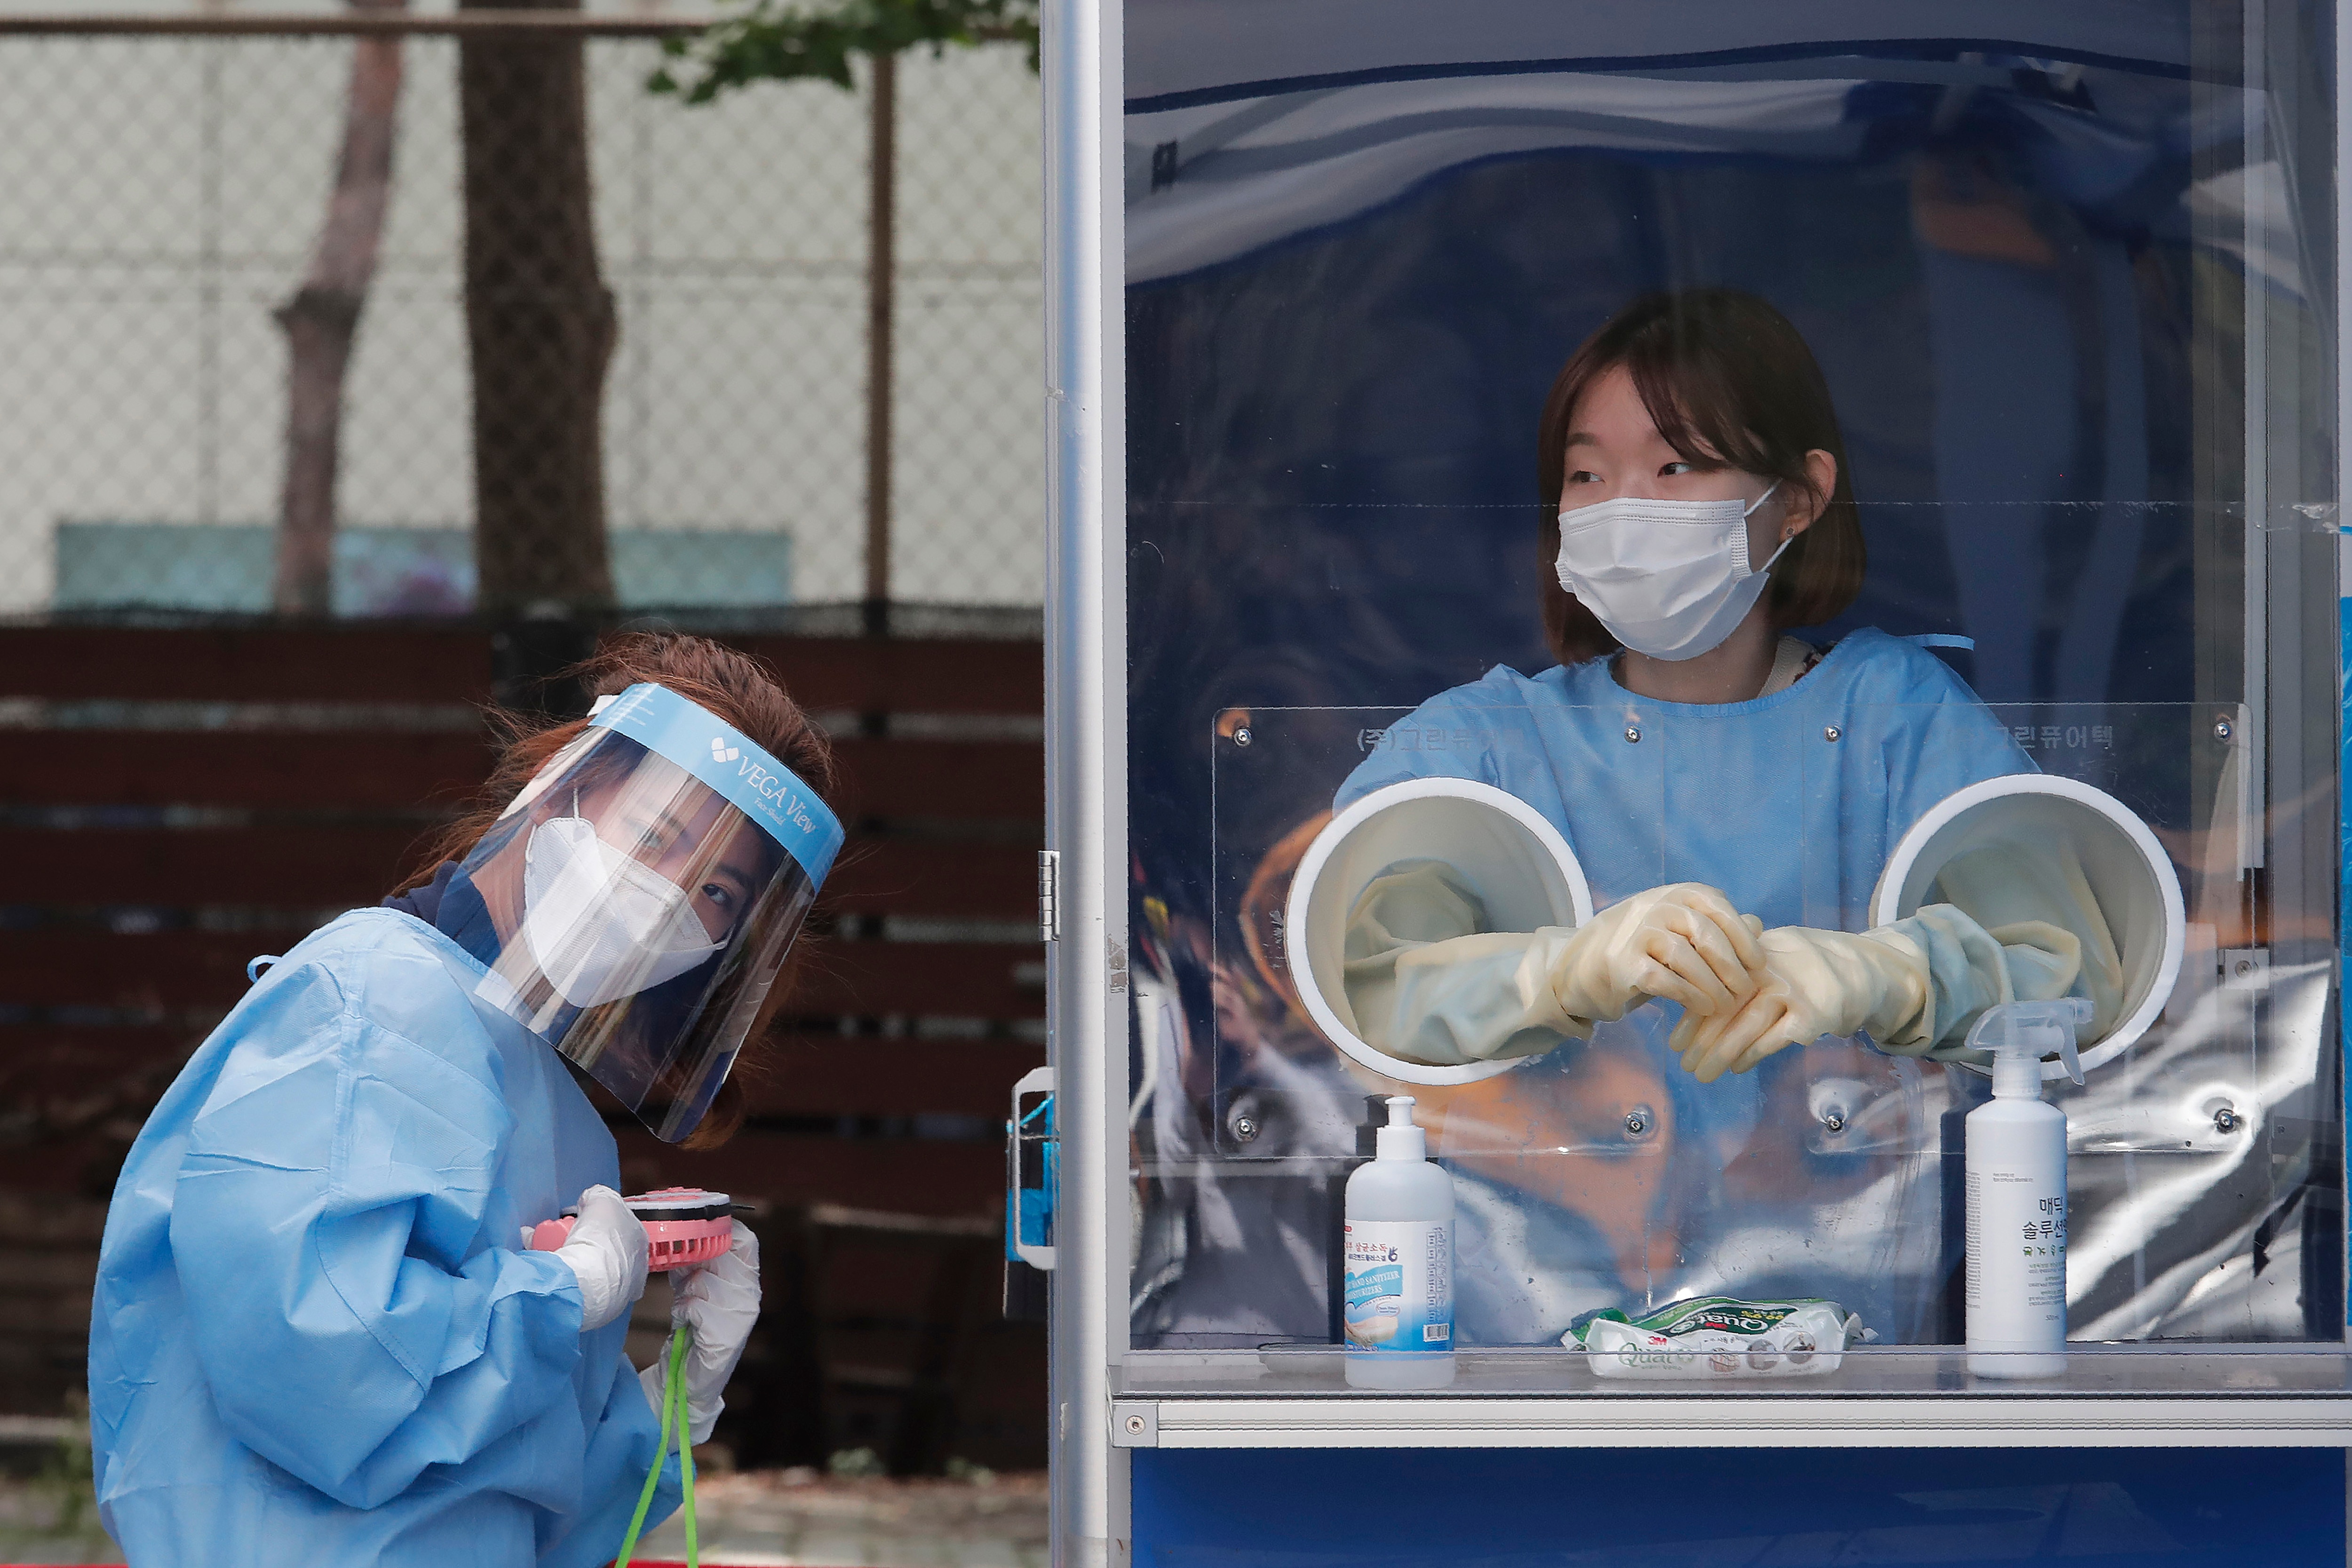 عامل طبي يحمل مروحة محمولة وسط الحرارة الشديدة أثناء اختبار ضباط الشرطة لـ COVID-19 في عيادة مؤقتة في سيول ، جنوب كوريا